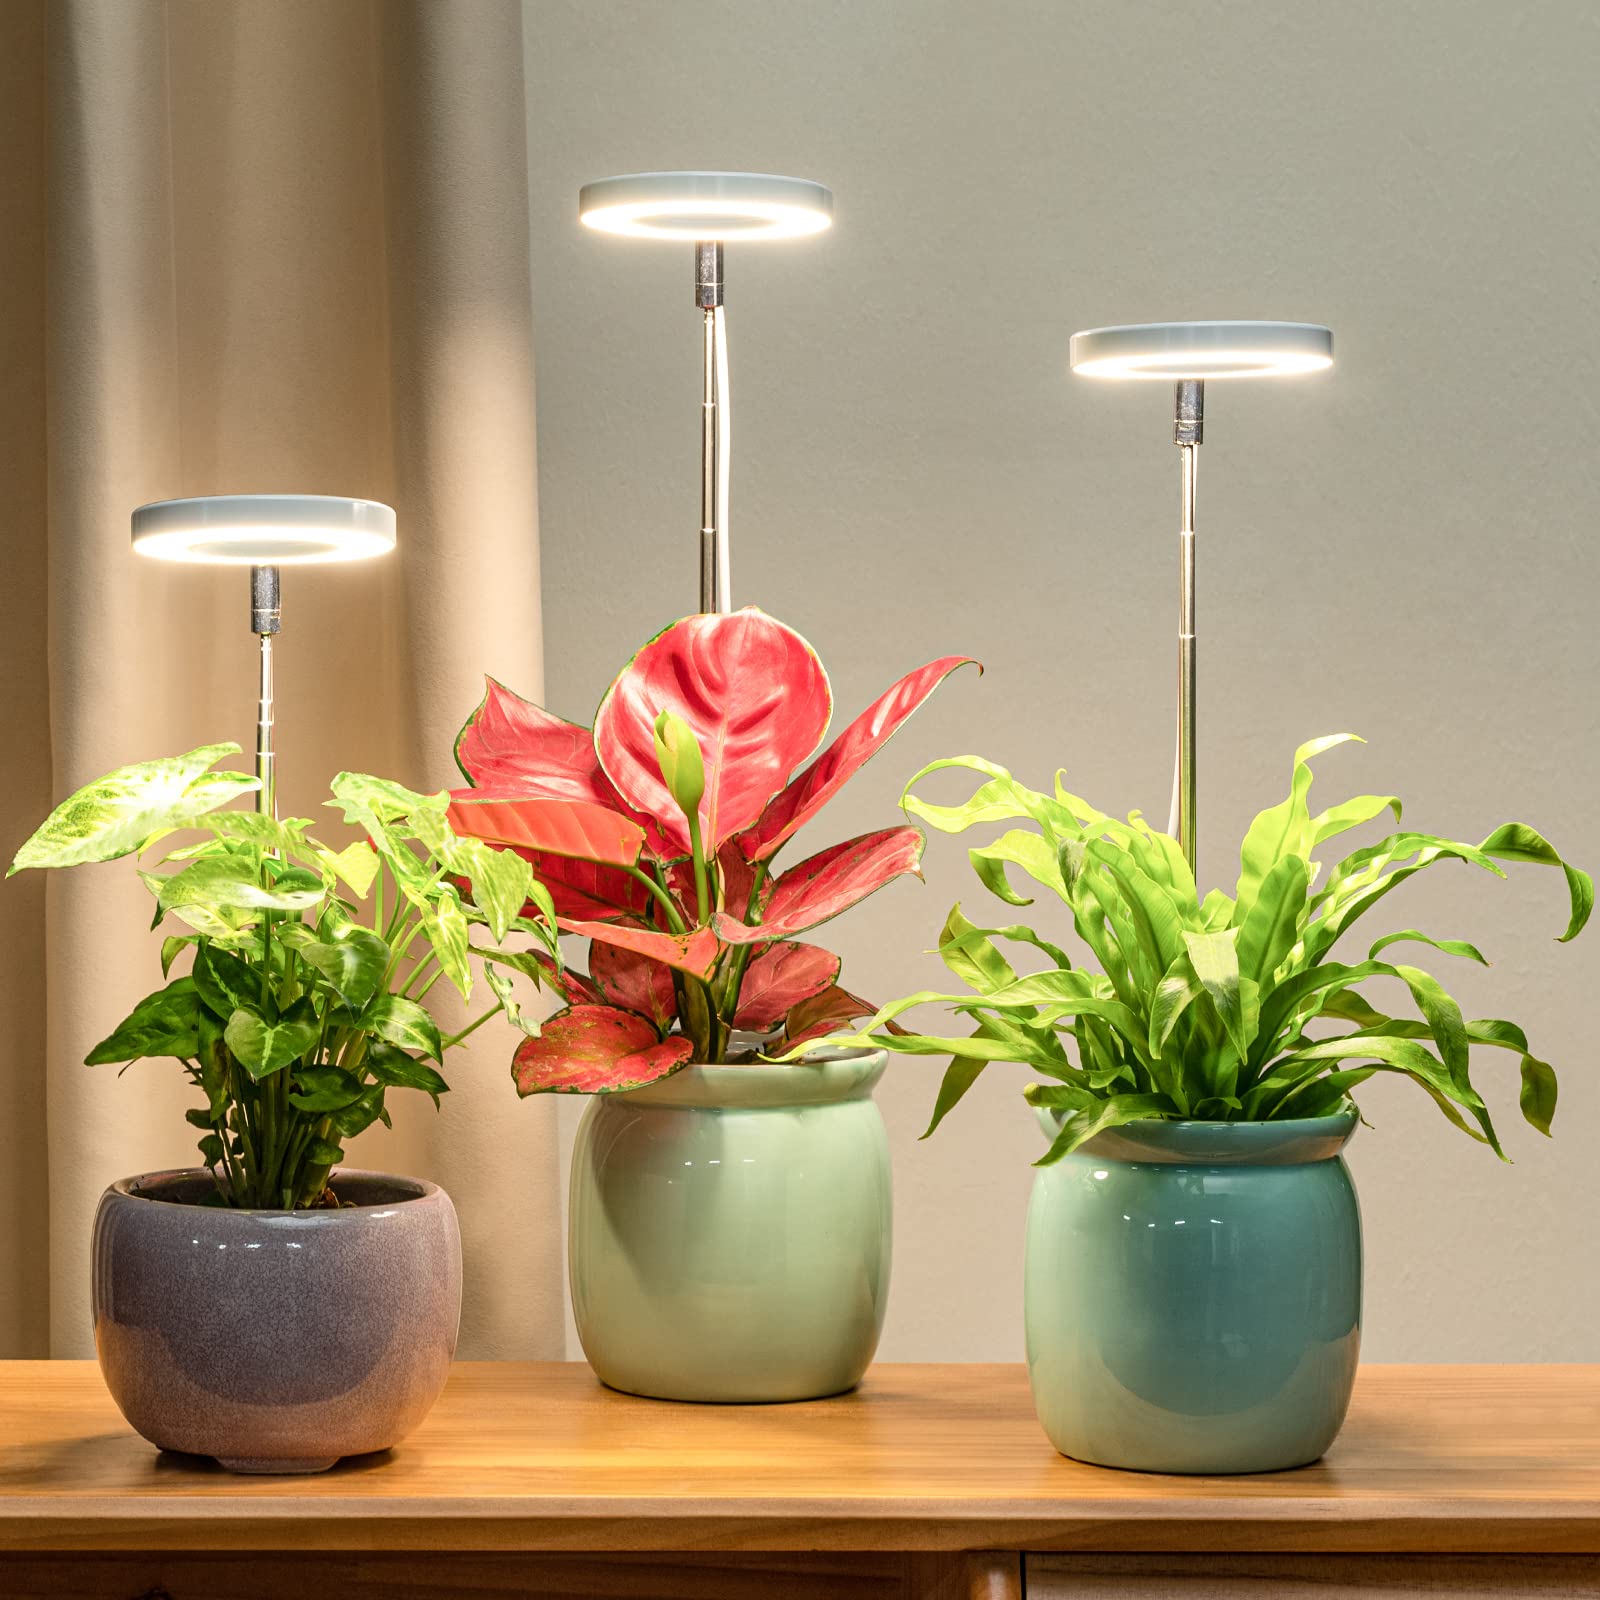 Lampe De Croissance, Ampoule pour Plantes Blanche Spectre Complet